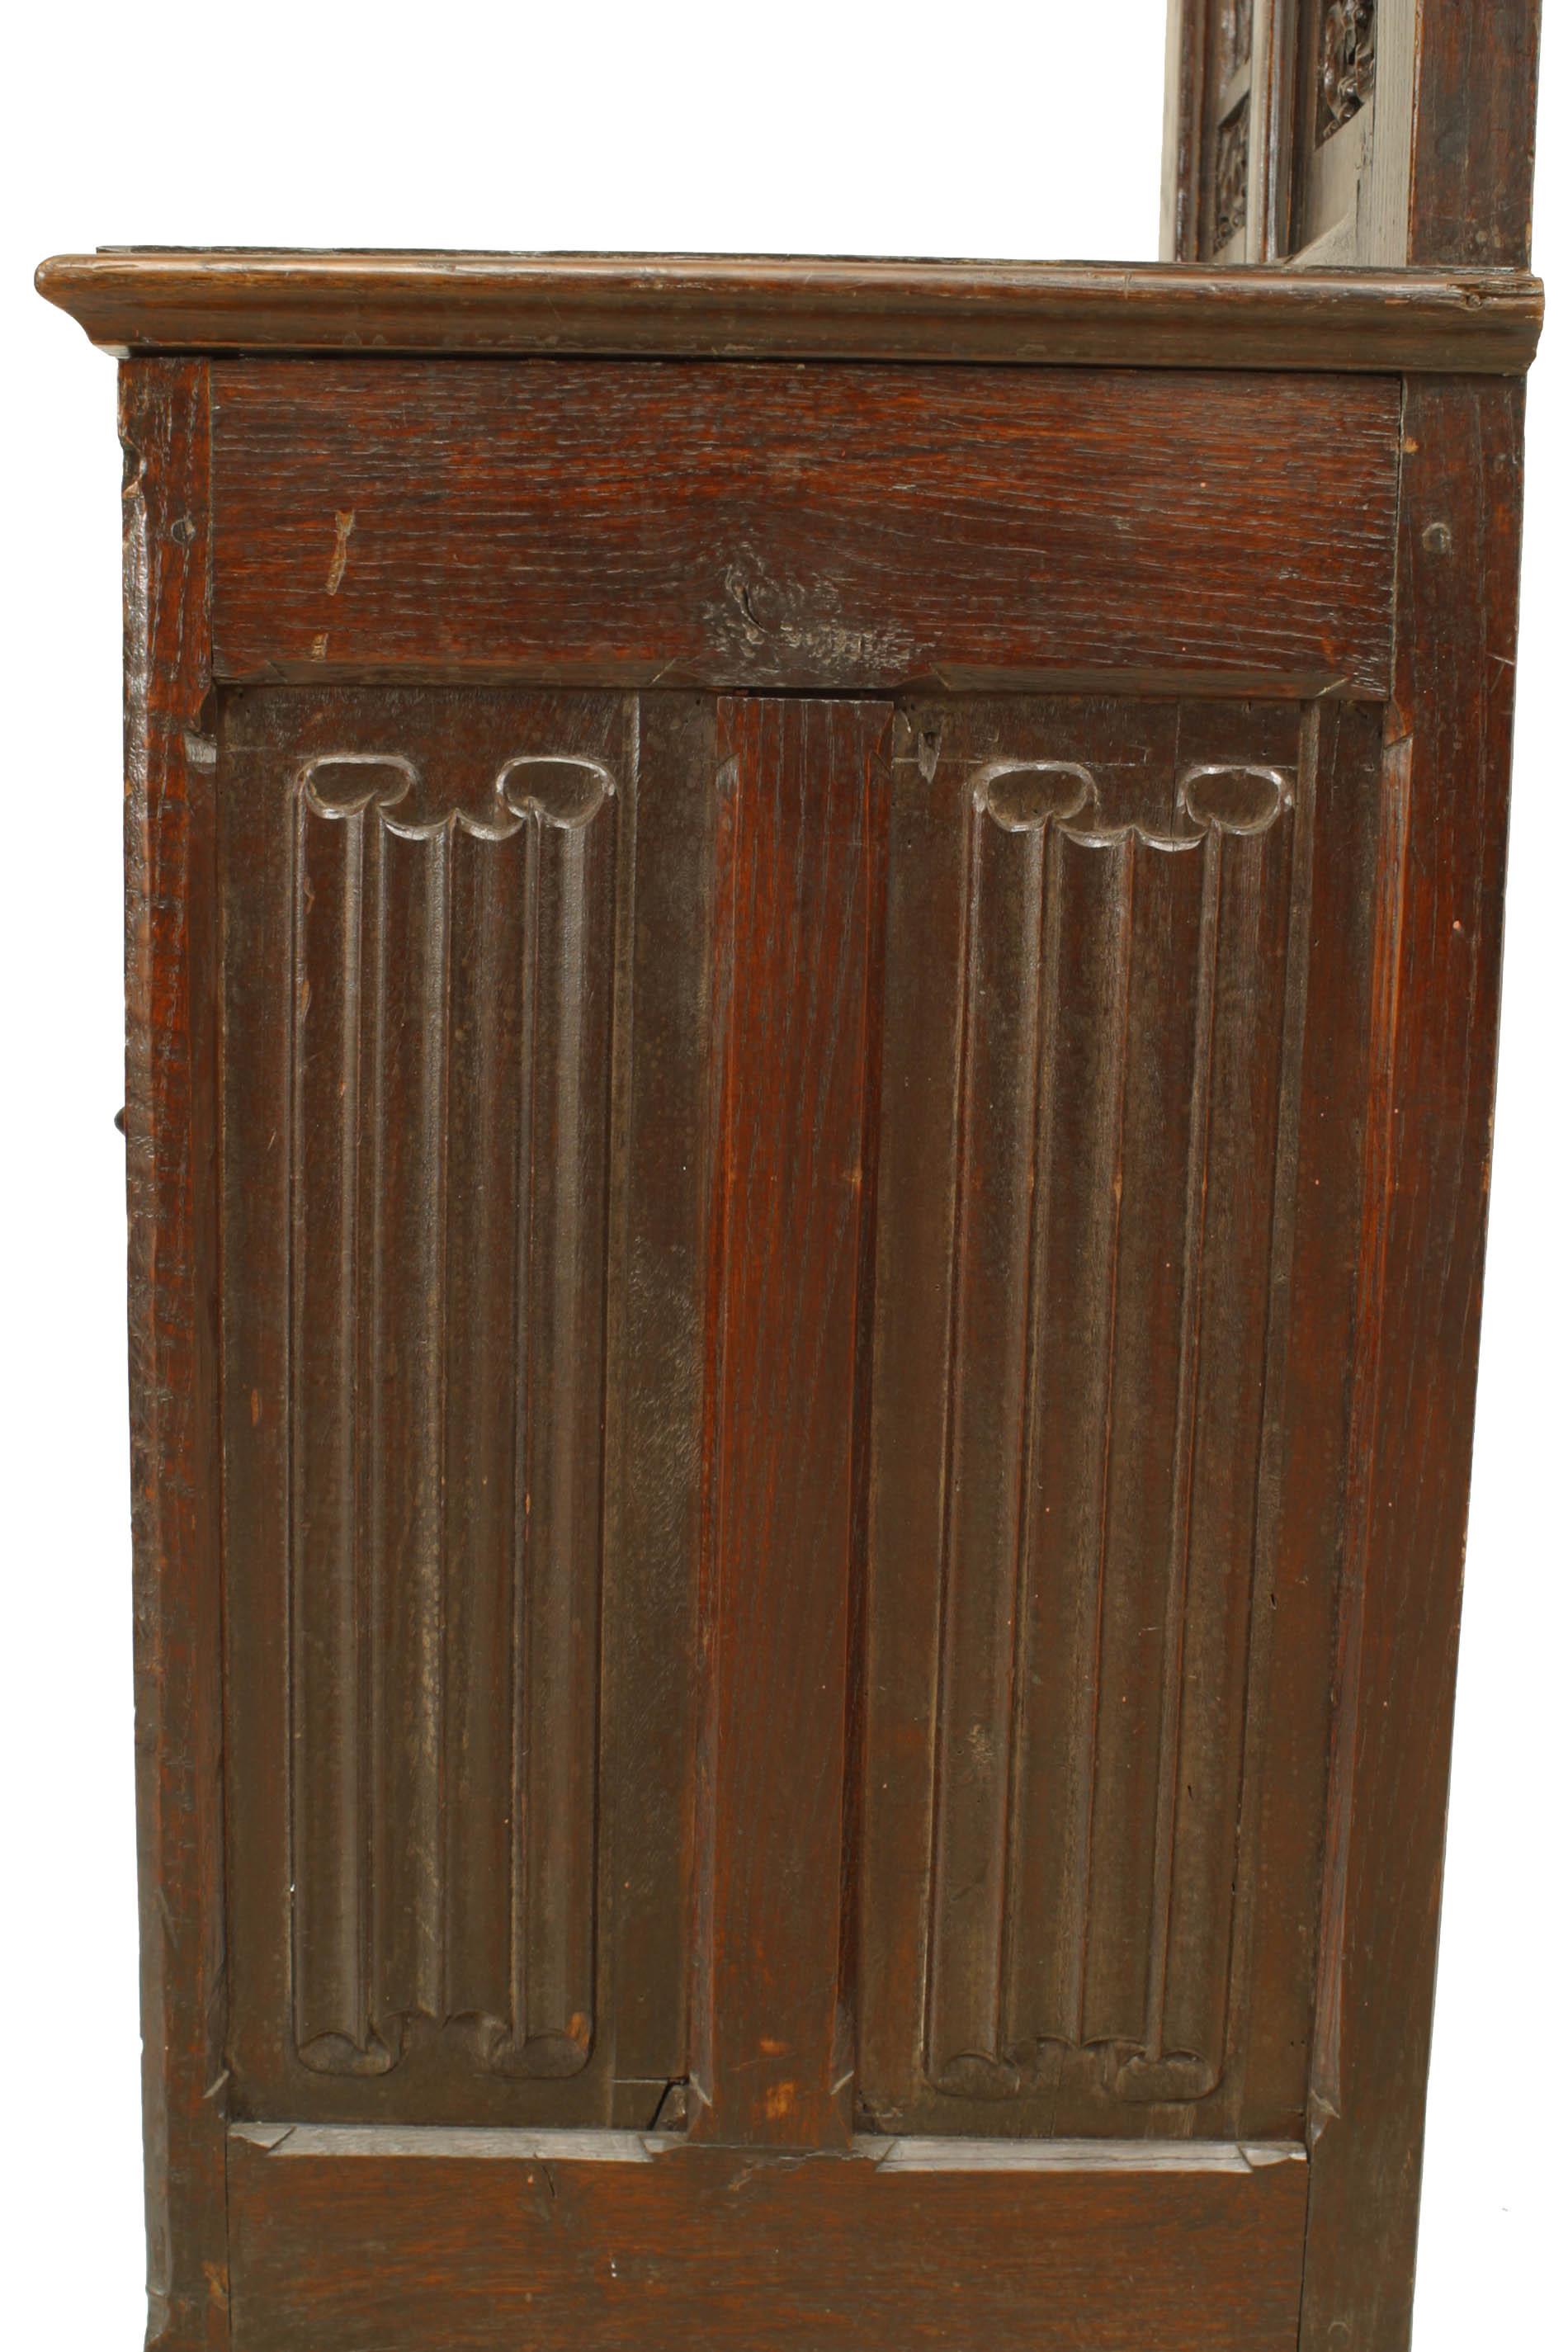 Chaise épiscopale en chêne à haut dossier sculpté et filigrané, de style néo-gothique anglais (XIXe siècle), avec épis de faîtage en forme de griffon.
 